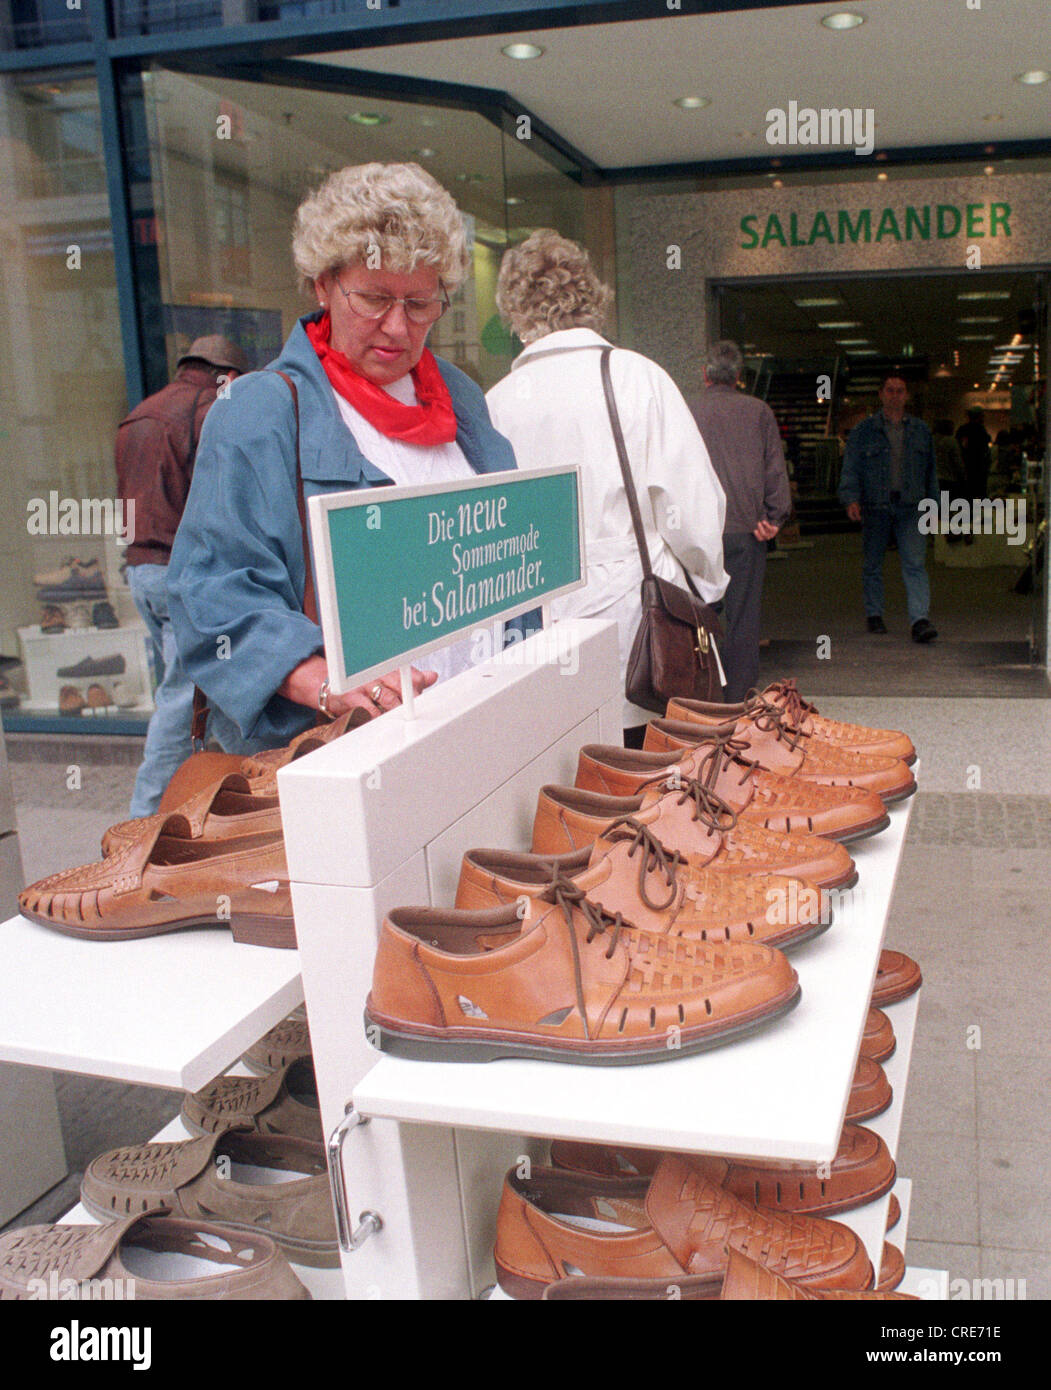 Salamander shoe Banque de photographies et d'images à haute résolution -  Alamy